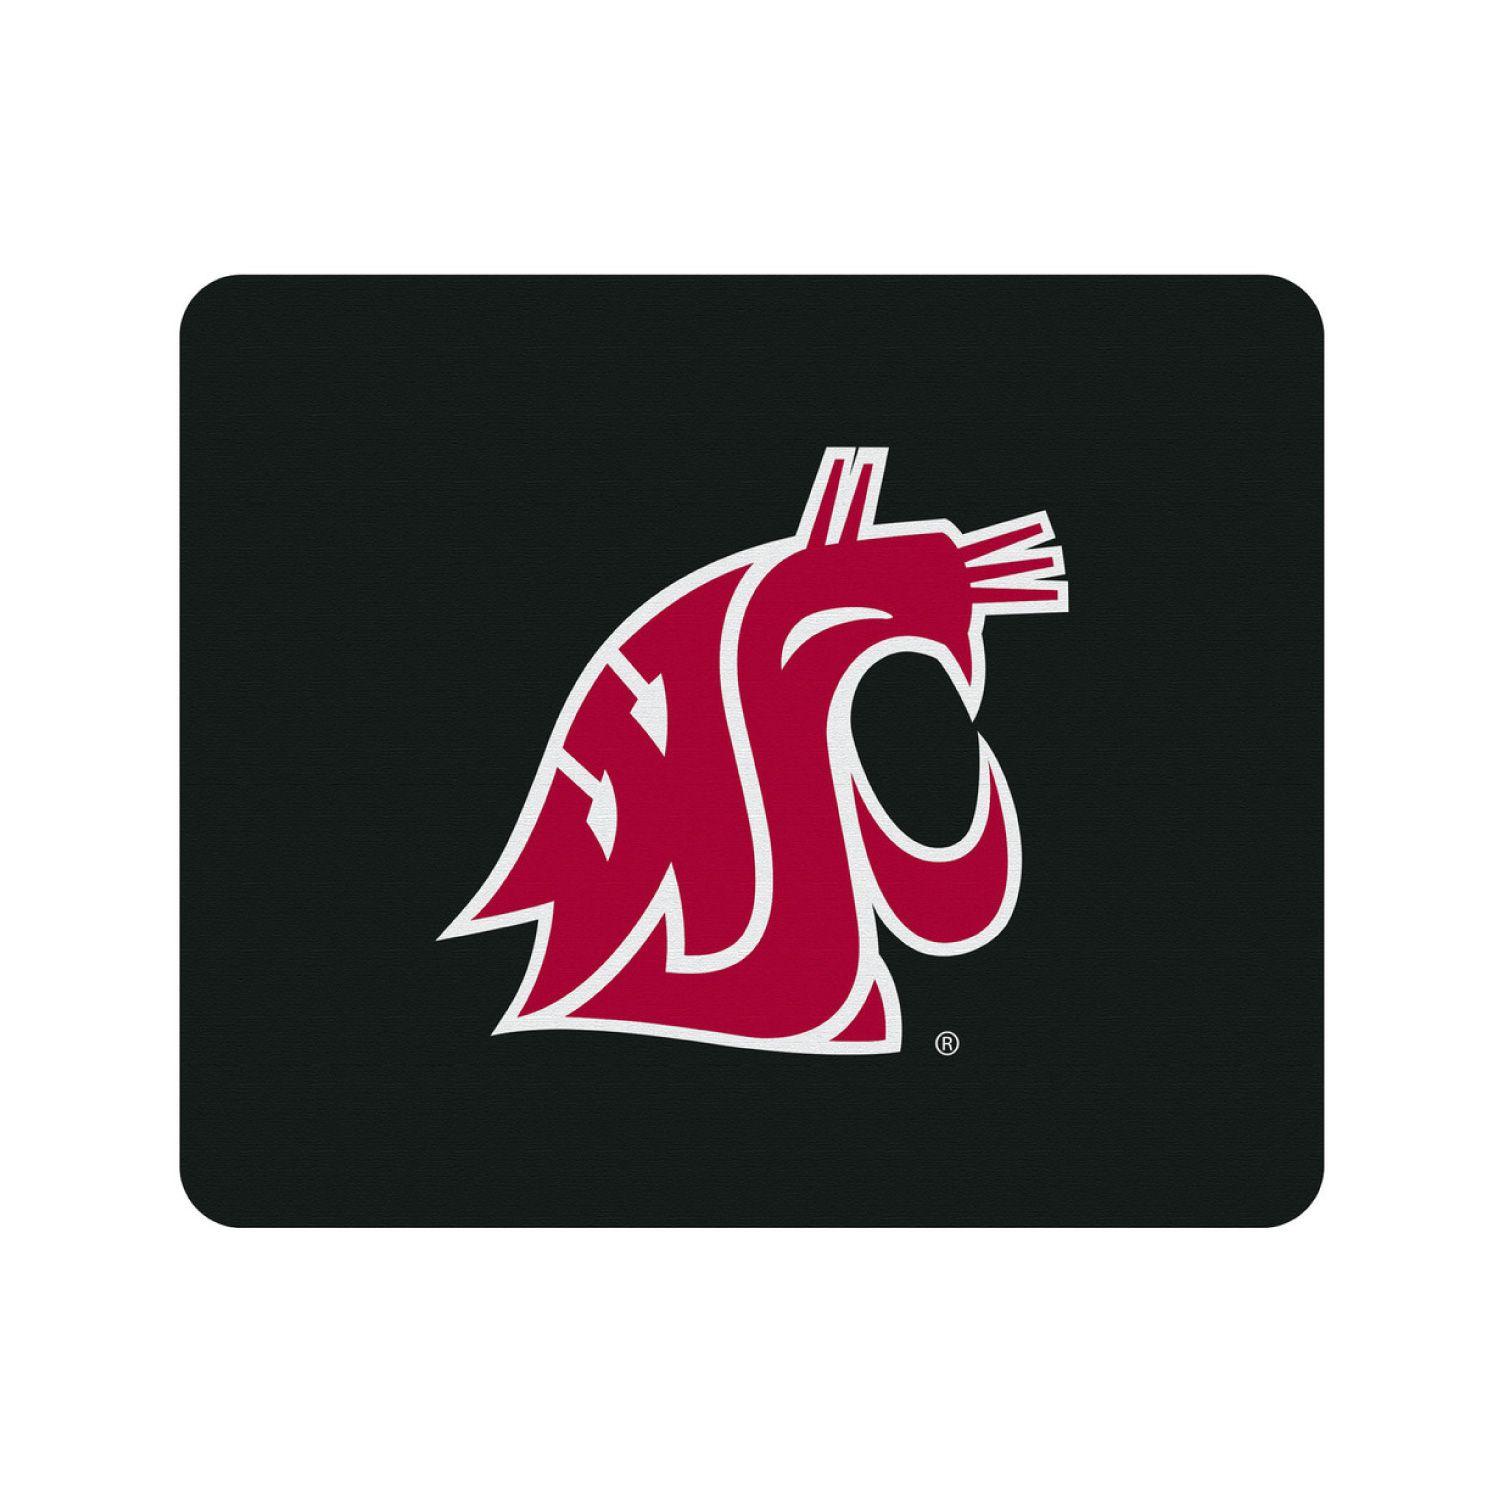 WSU Logo - Washington State University, Mouse Pad